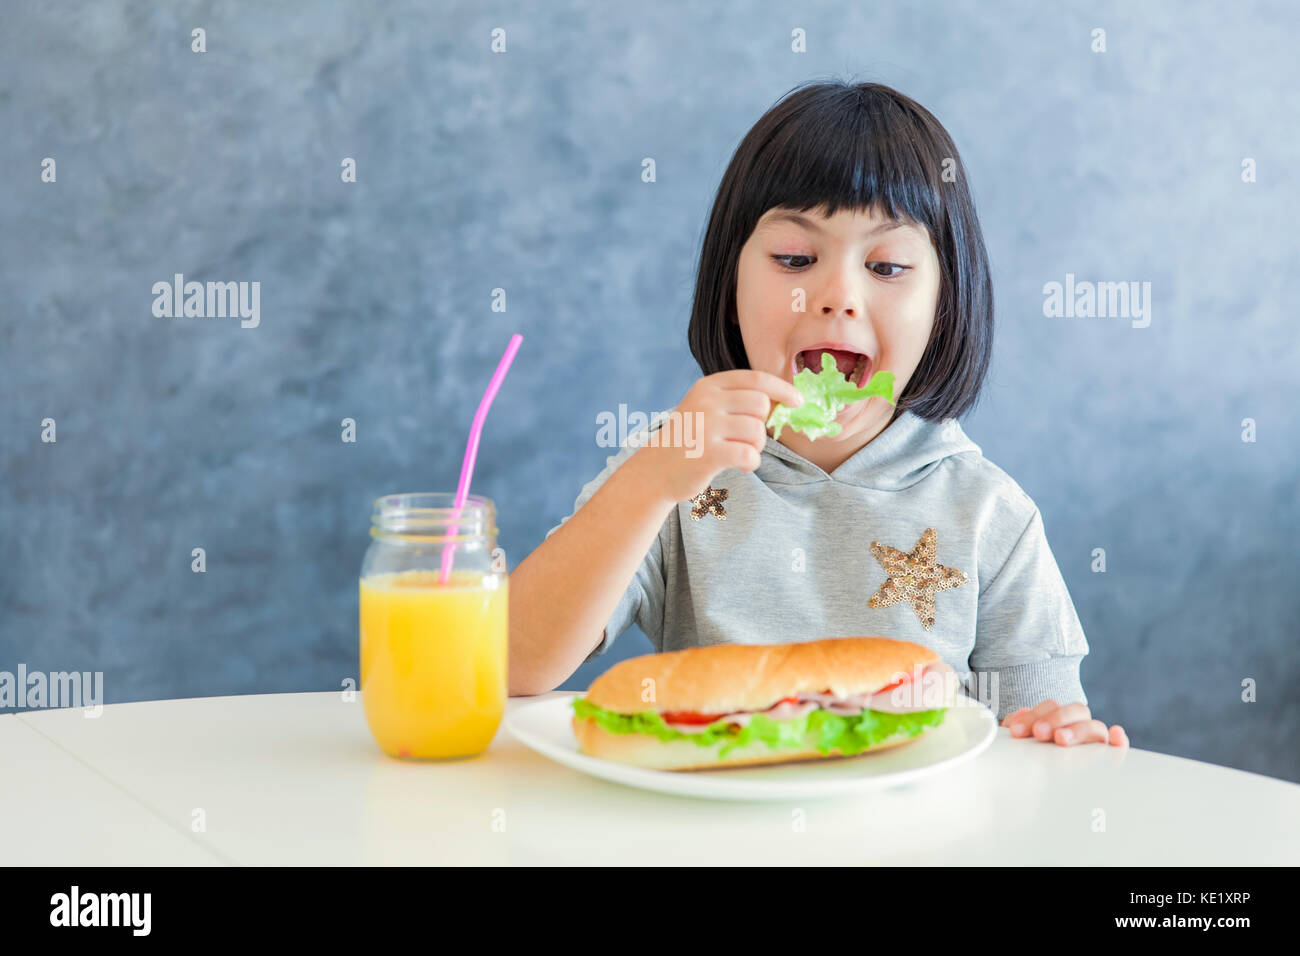 Cute black hair girl eating la laitue et le petit-déjeuner Banque D'Images